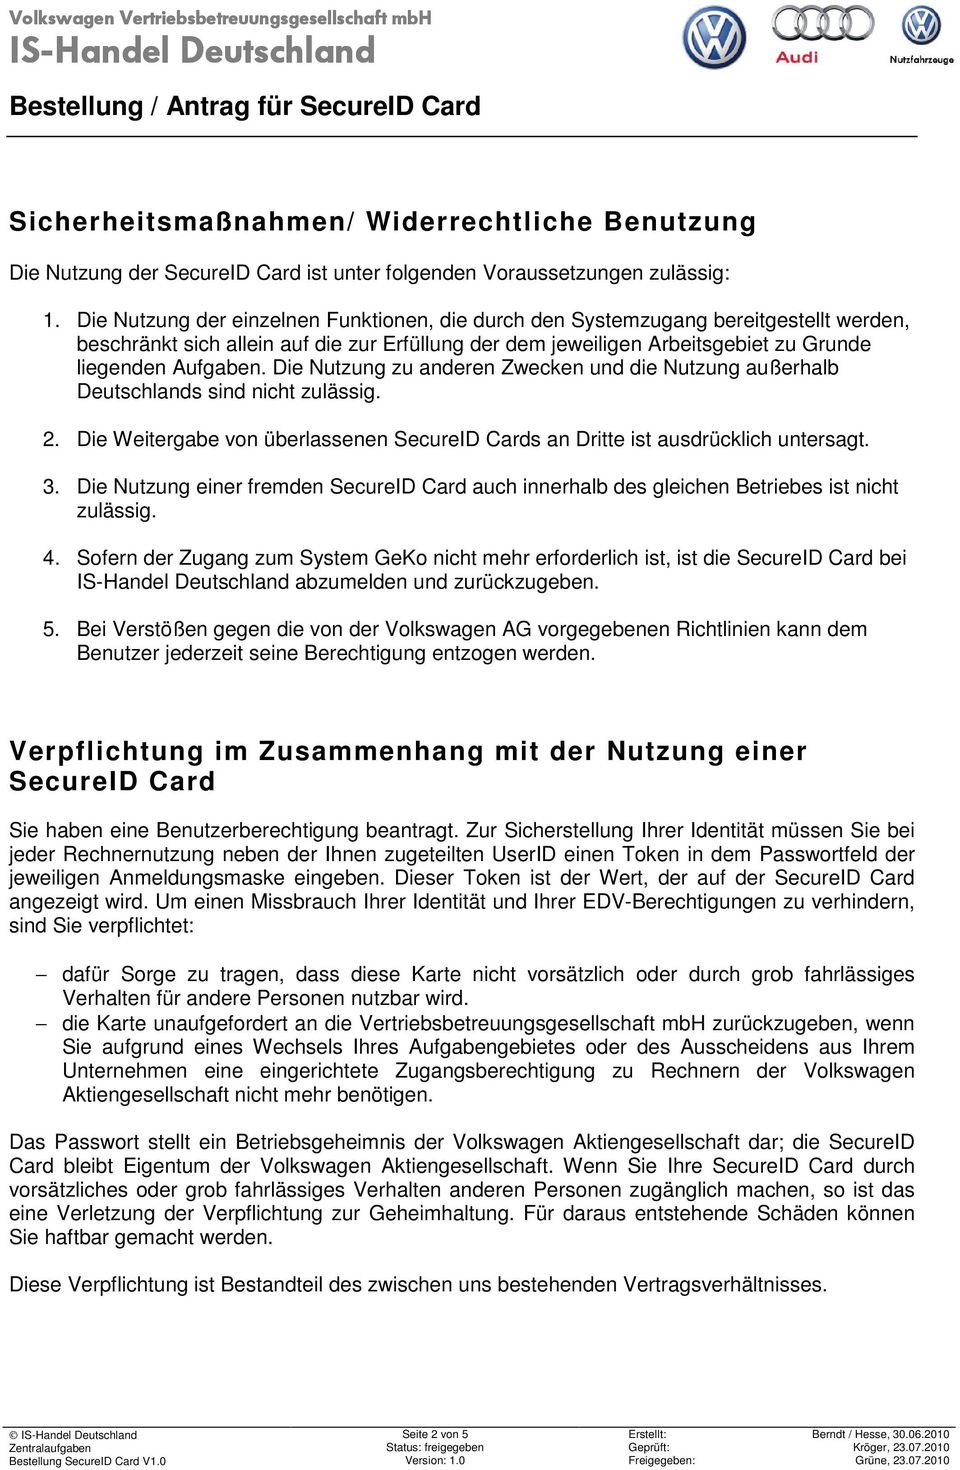 Die Nutzung zu anderen Zwecken und die Nutzung außerhalb Deutschlands sind nicht zulässig. 2. Die Weitergabe von überlassenen SecureID Cards an Dritte ist ausdrücklich untersagt. 3.